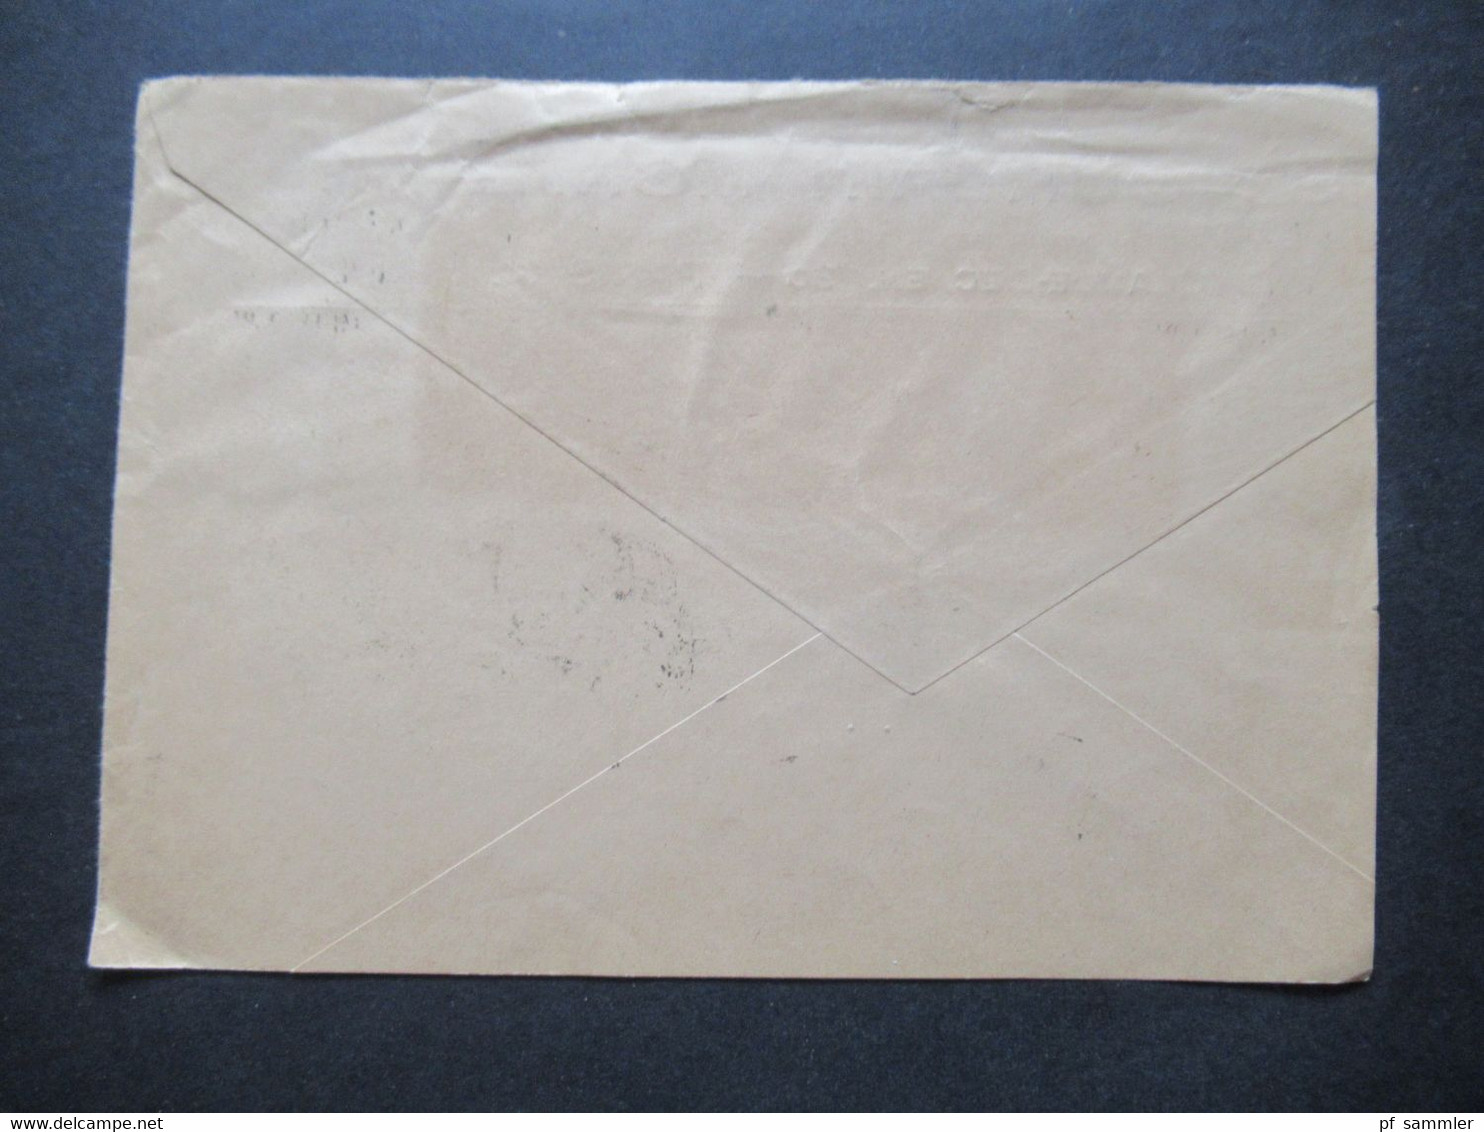 Frankreich 1925 Auslandsbrief Von Paris Jourdain Monneret Nach Berlin Elektrizitäts Gesell. Bahn Abteilung - Briefe U. Dokumente